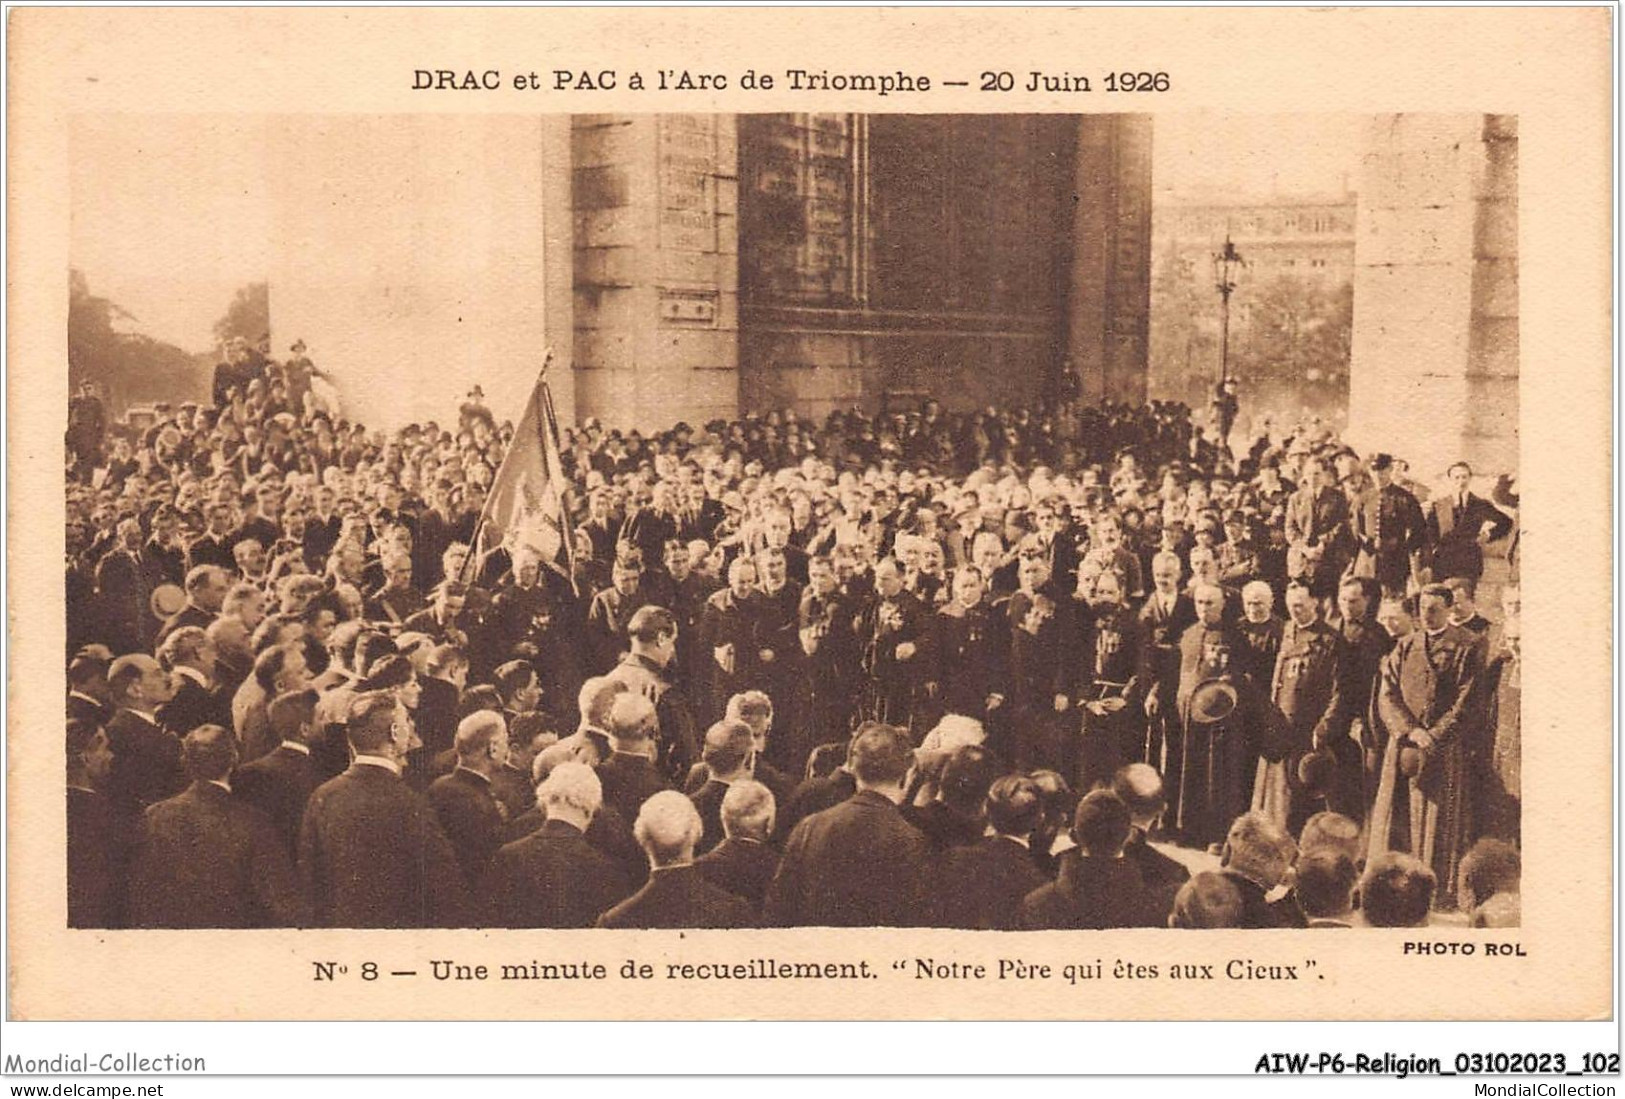 AIWP6-0628 - RELIGION - DRAC ET PAC A L'ARC DE TRIOMPHE - 20 JUIN 1926 - N*8 - UNE MINUTE DE RECUEILLEMENT  - Monuments